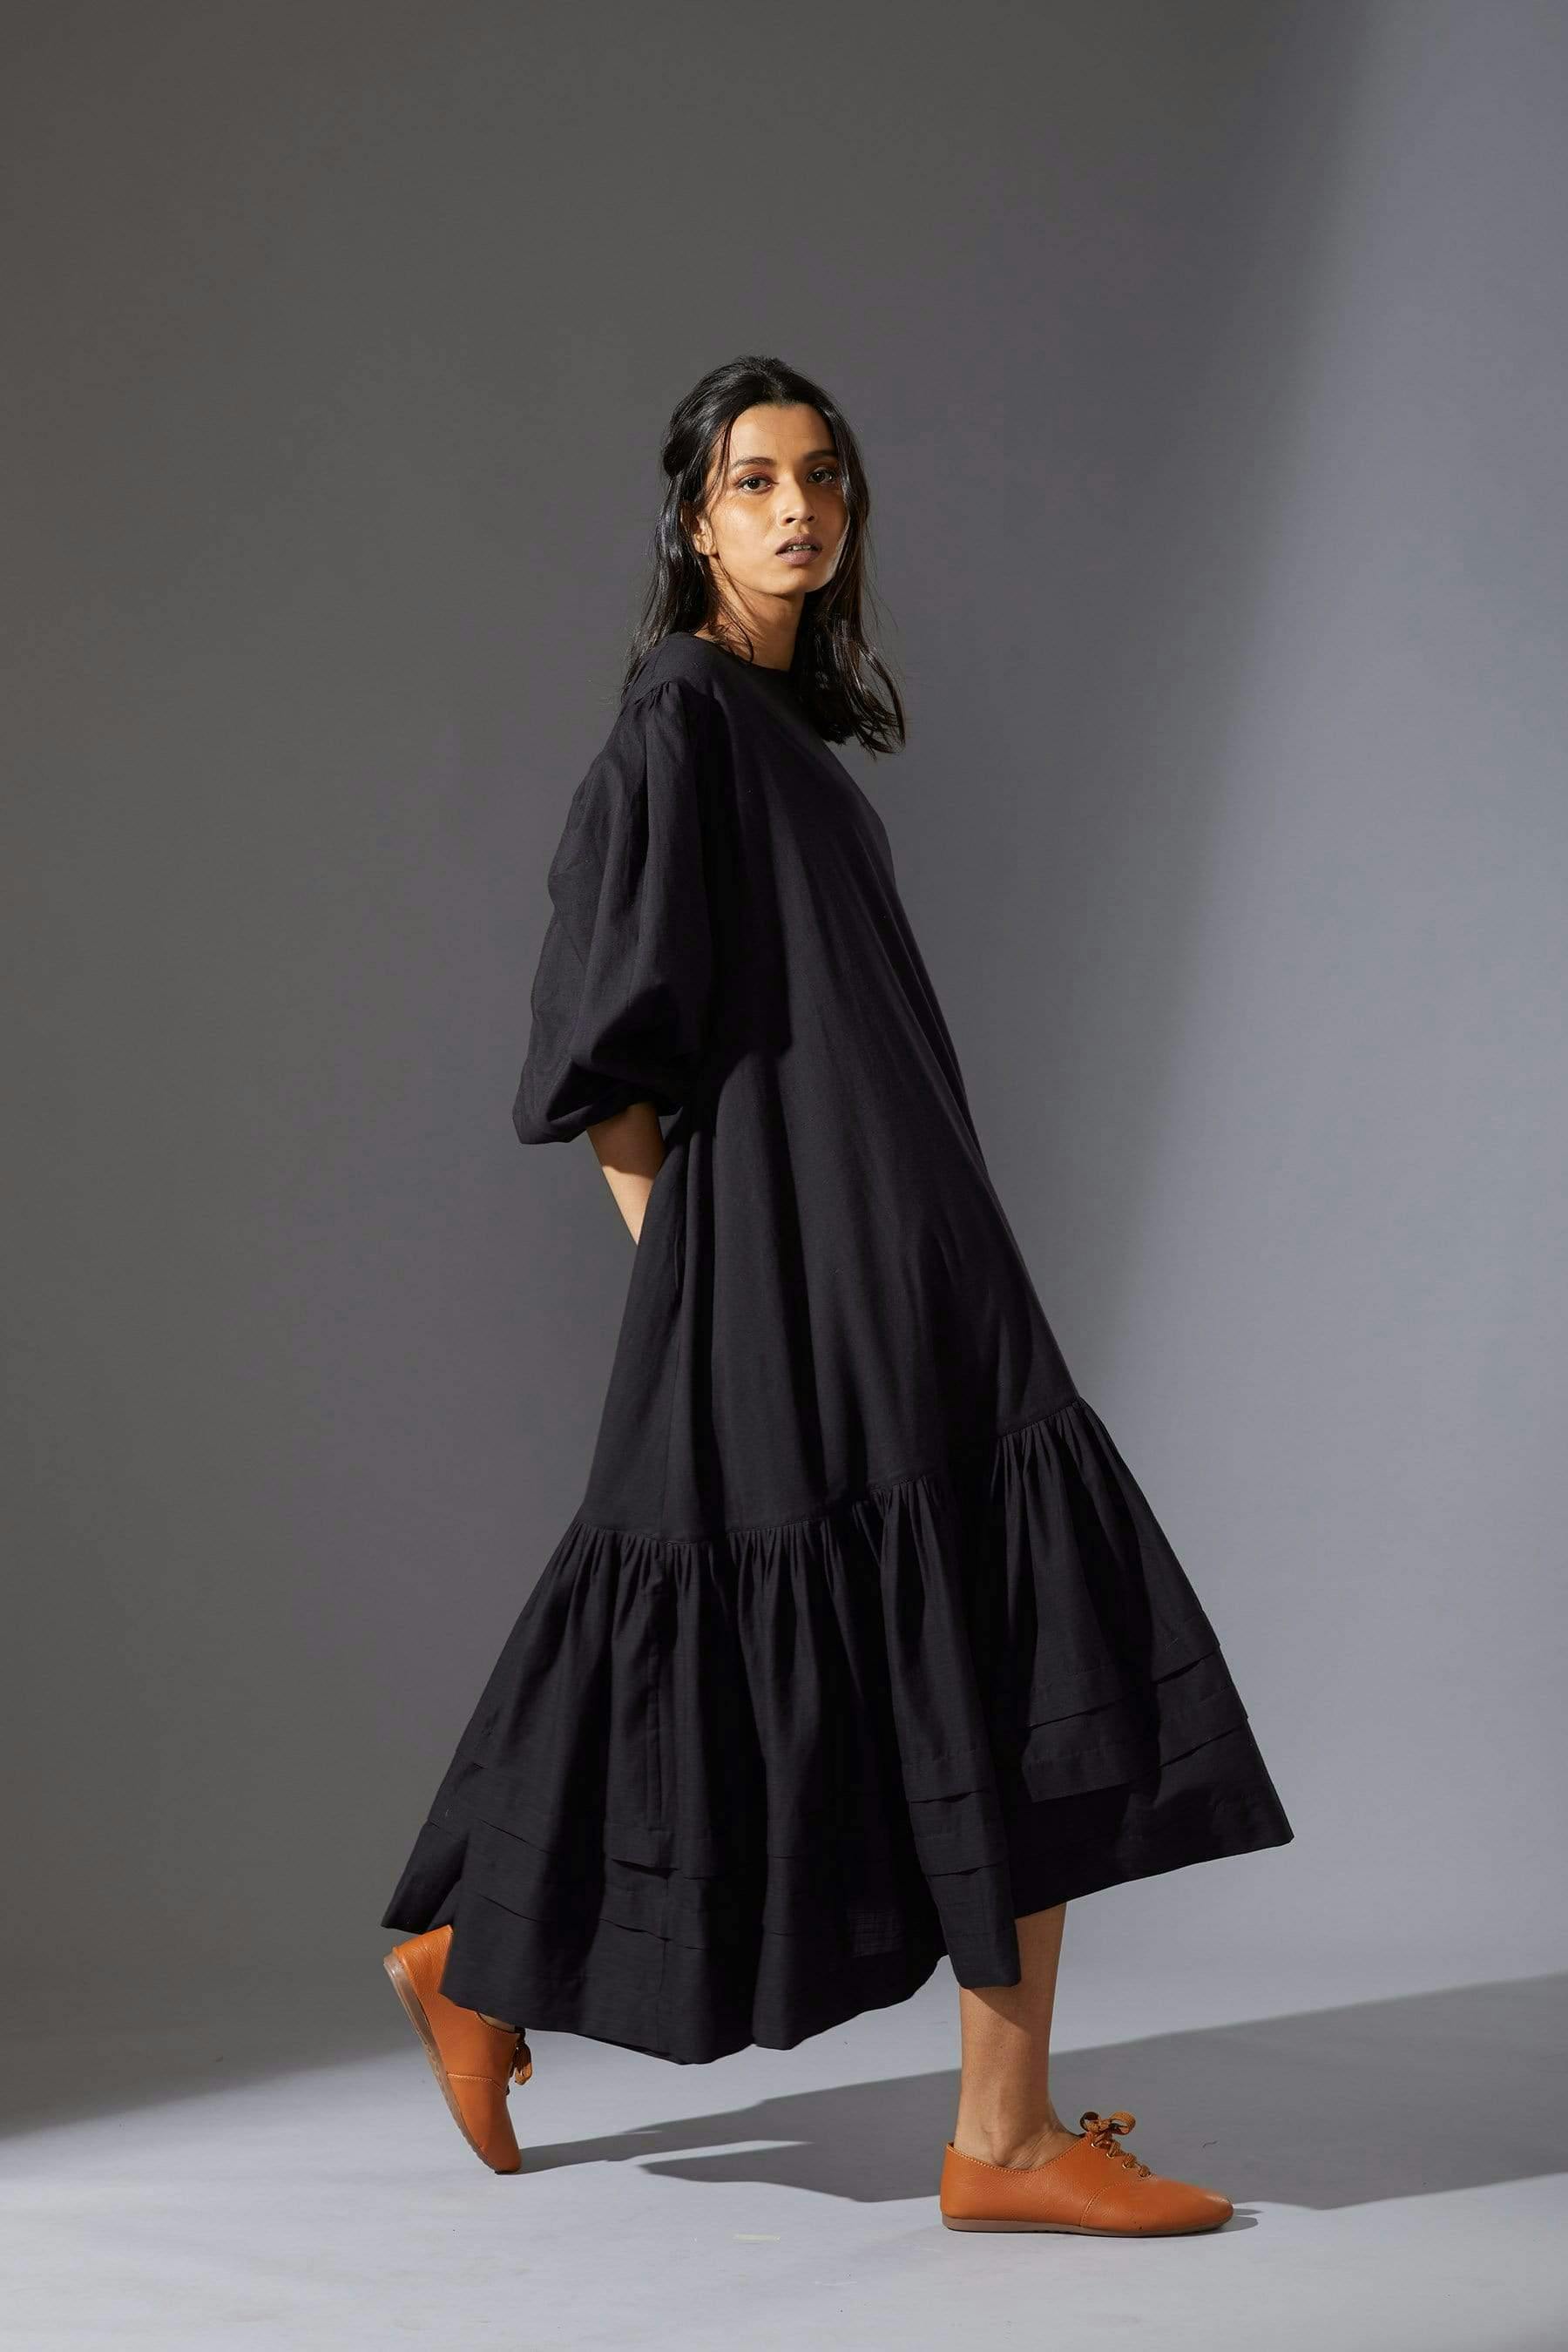 Mati Kaavya Black Dress, a product by Style Mati